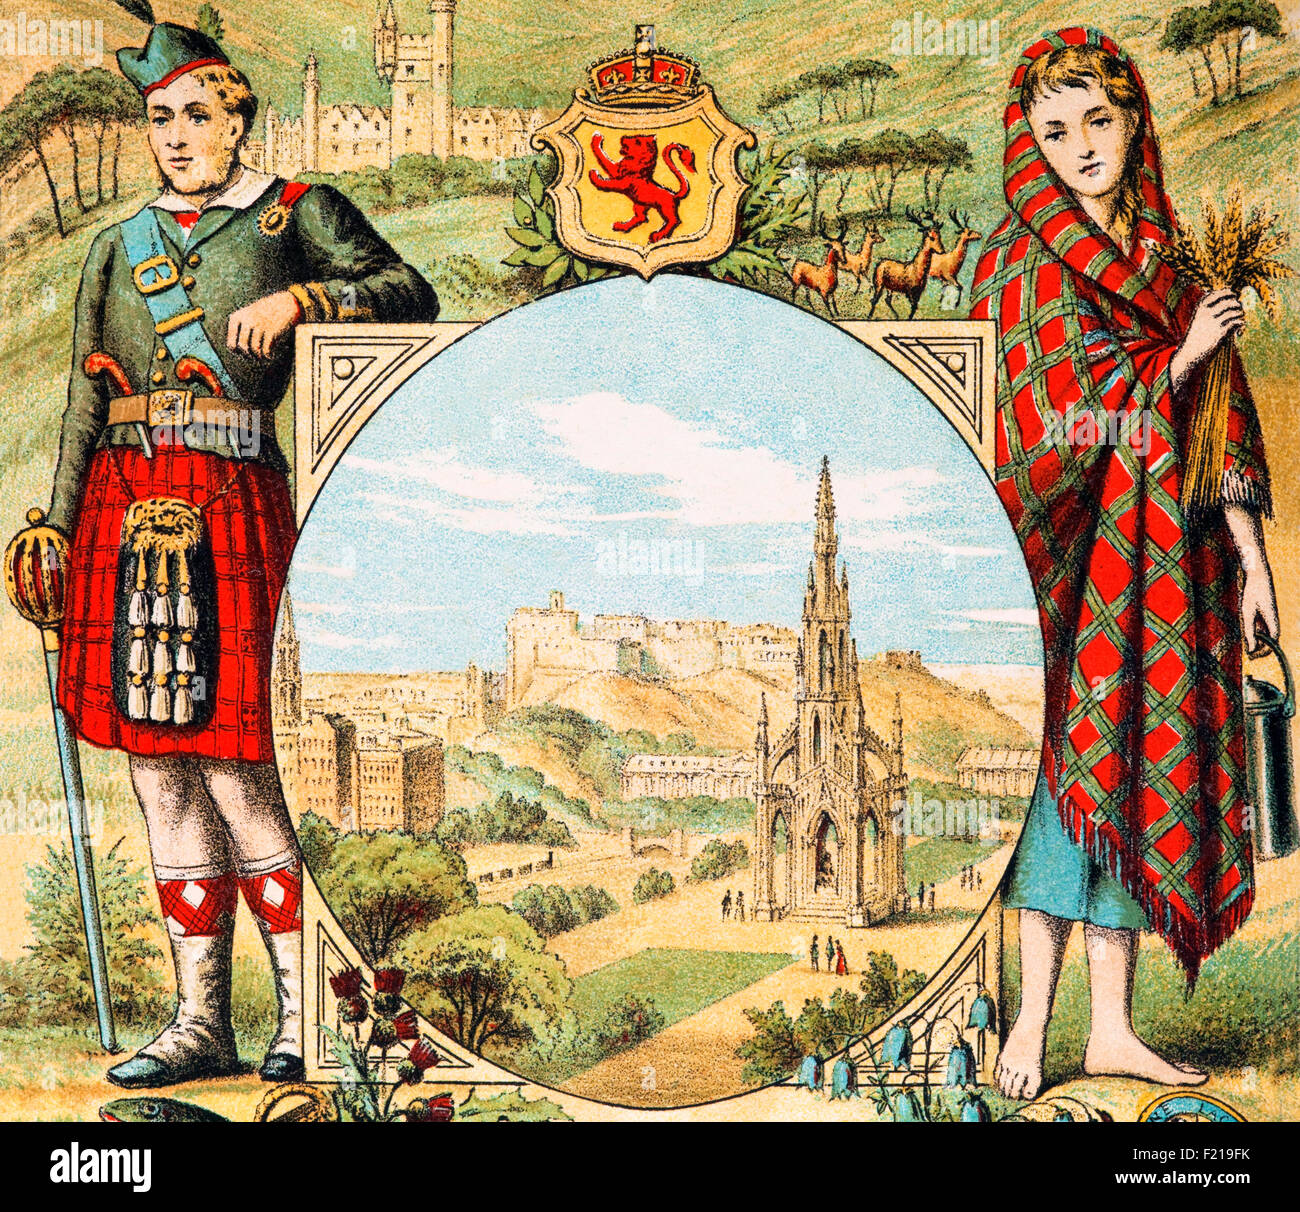 Hombre Vestido Tradicional Tartán Kilt Un Ejemplo De Traje Nacional De  Escocia Fotos, retratos, imágenes y fotografía de archivo libres de  derecho. Image 49974775